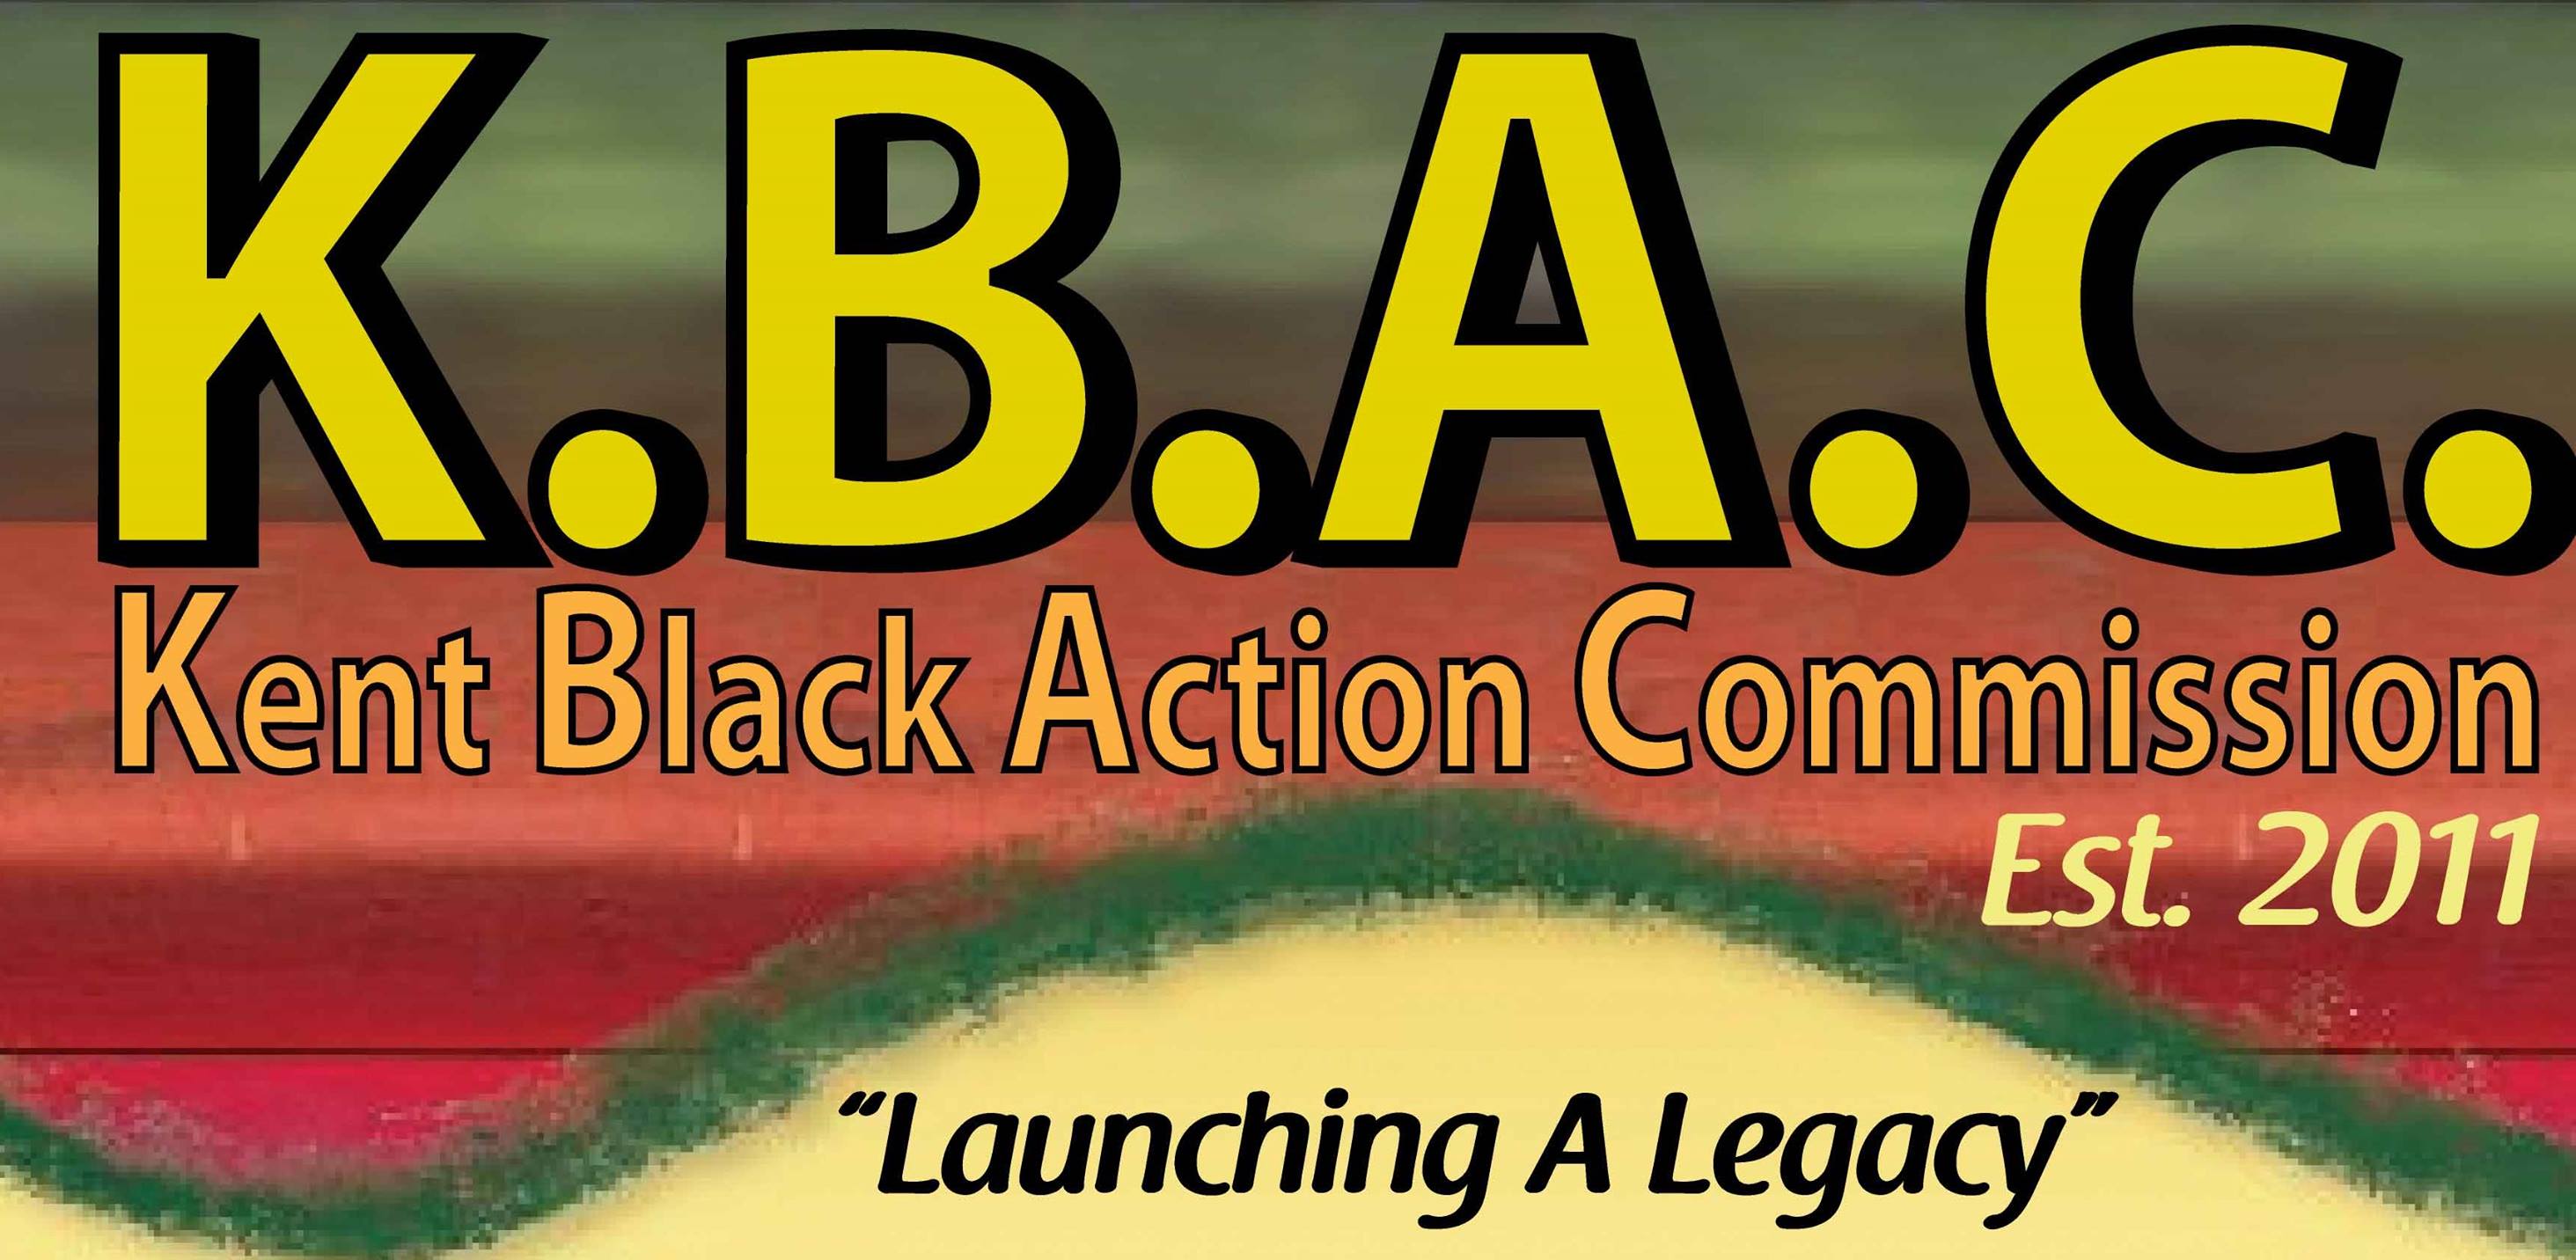 Kent Black Action Commission